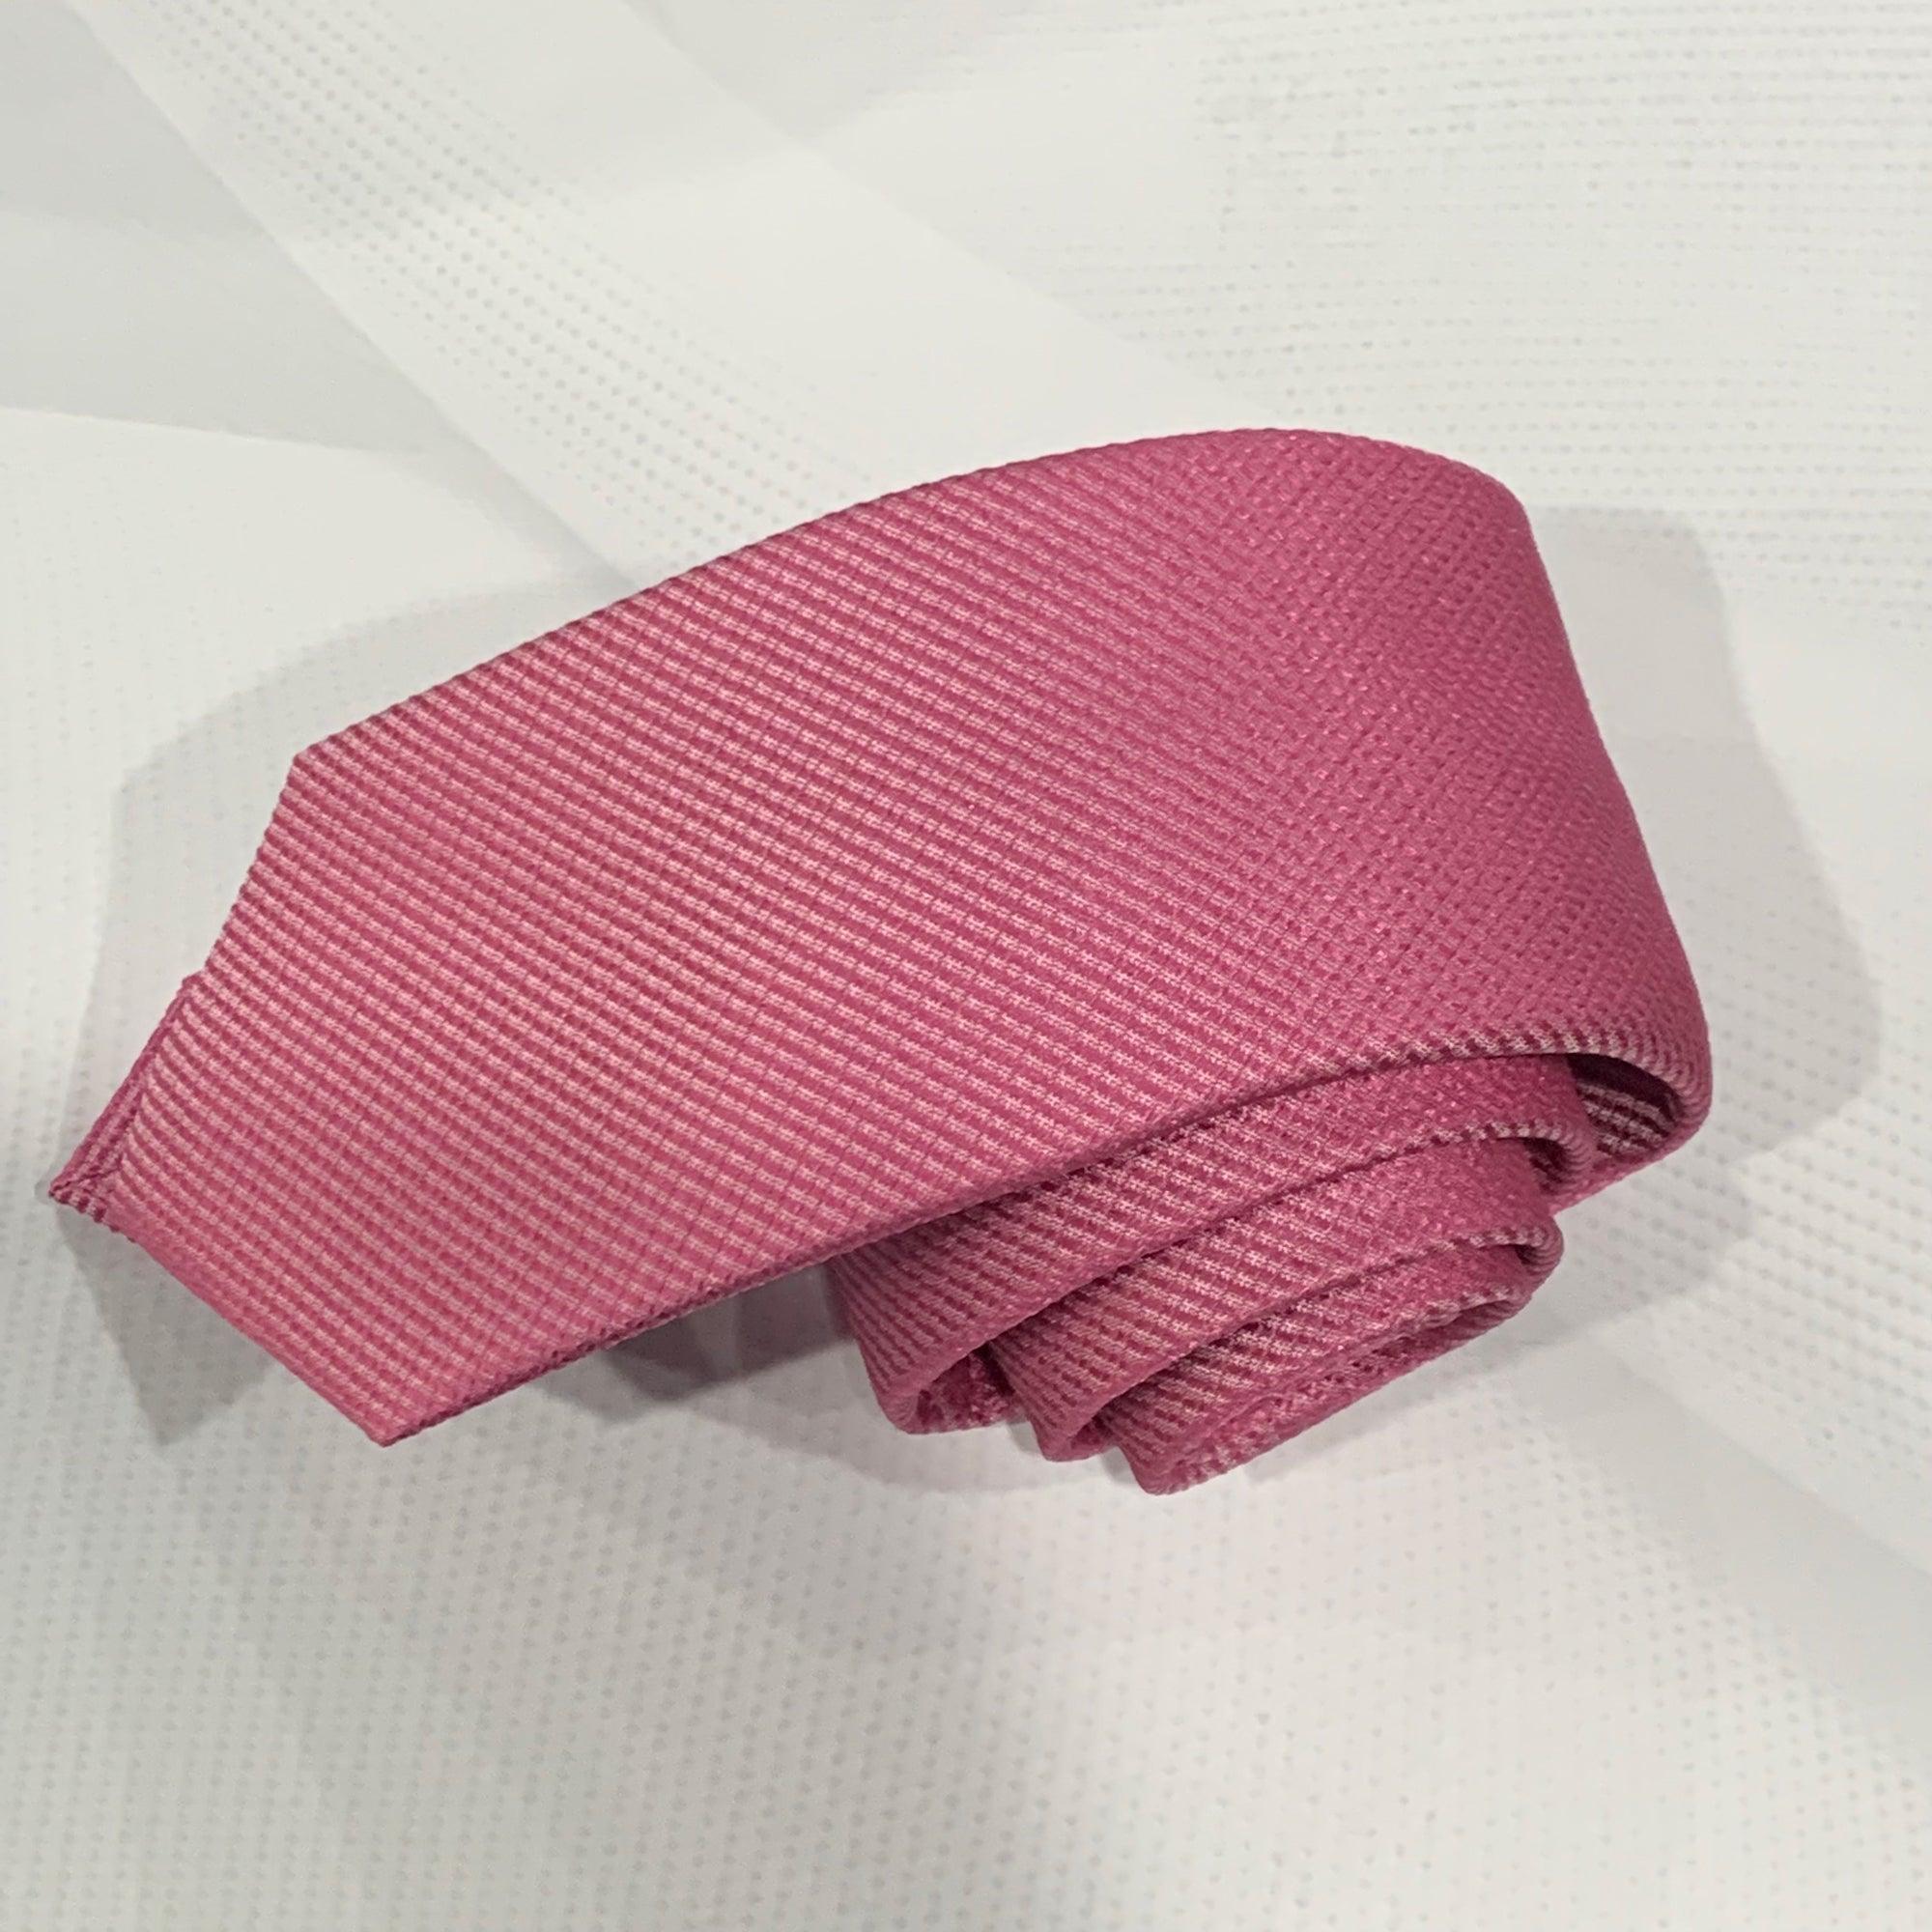 X19055-1 Silk Tie - Harrys for Menswear